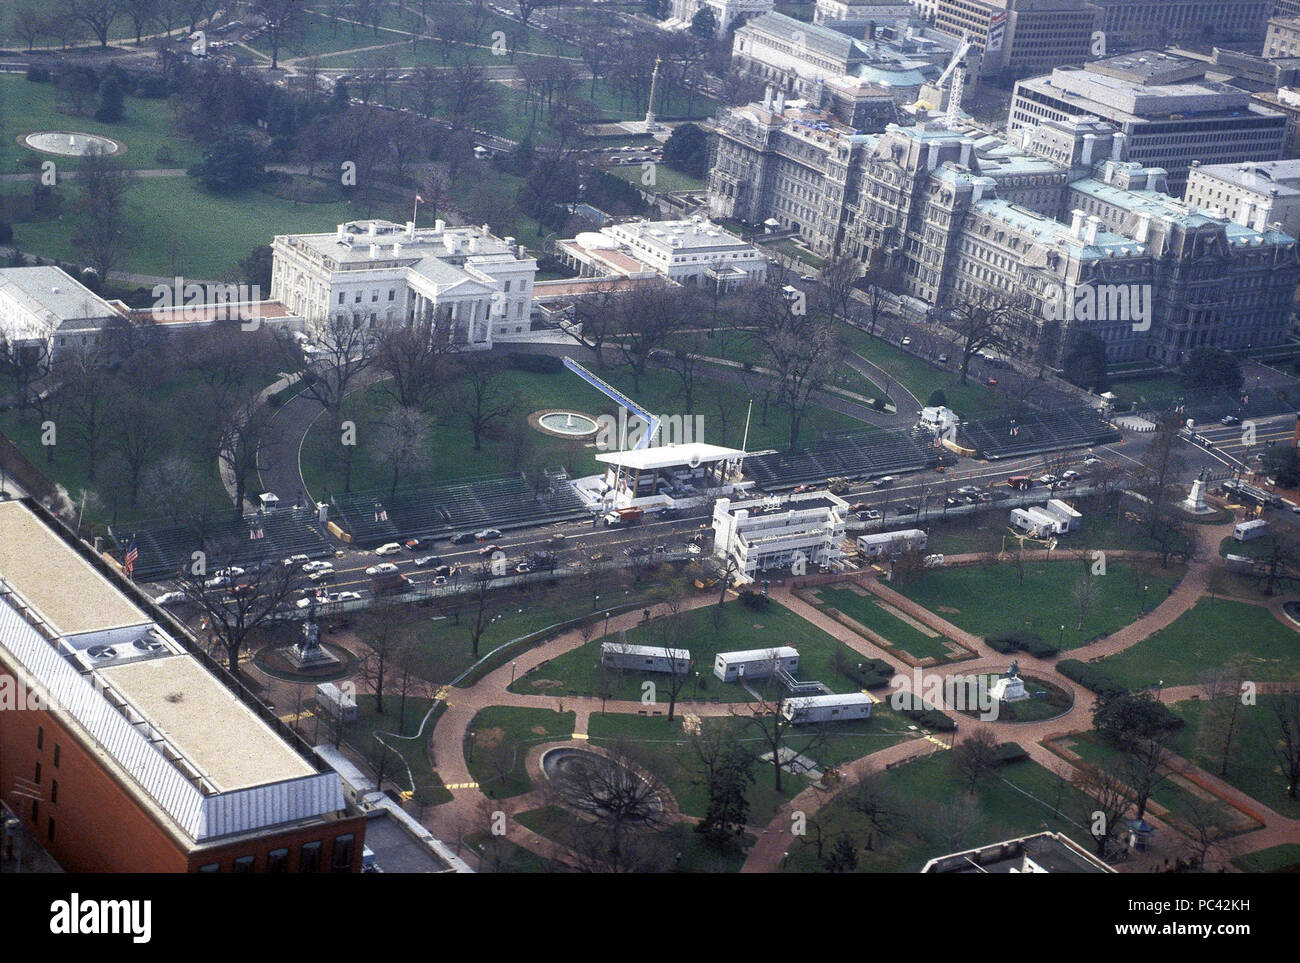 Photographie aérienne William J. Clinton Presidential Inauguration de l'antenne, de Maison Blanche. Banque D'Images